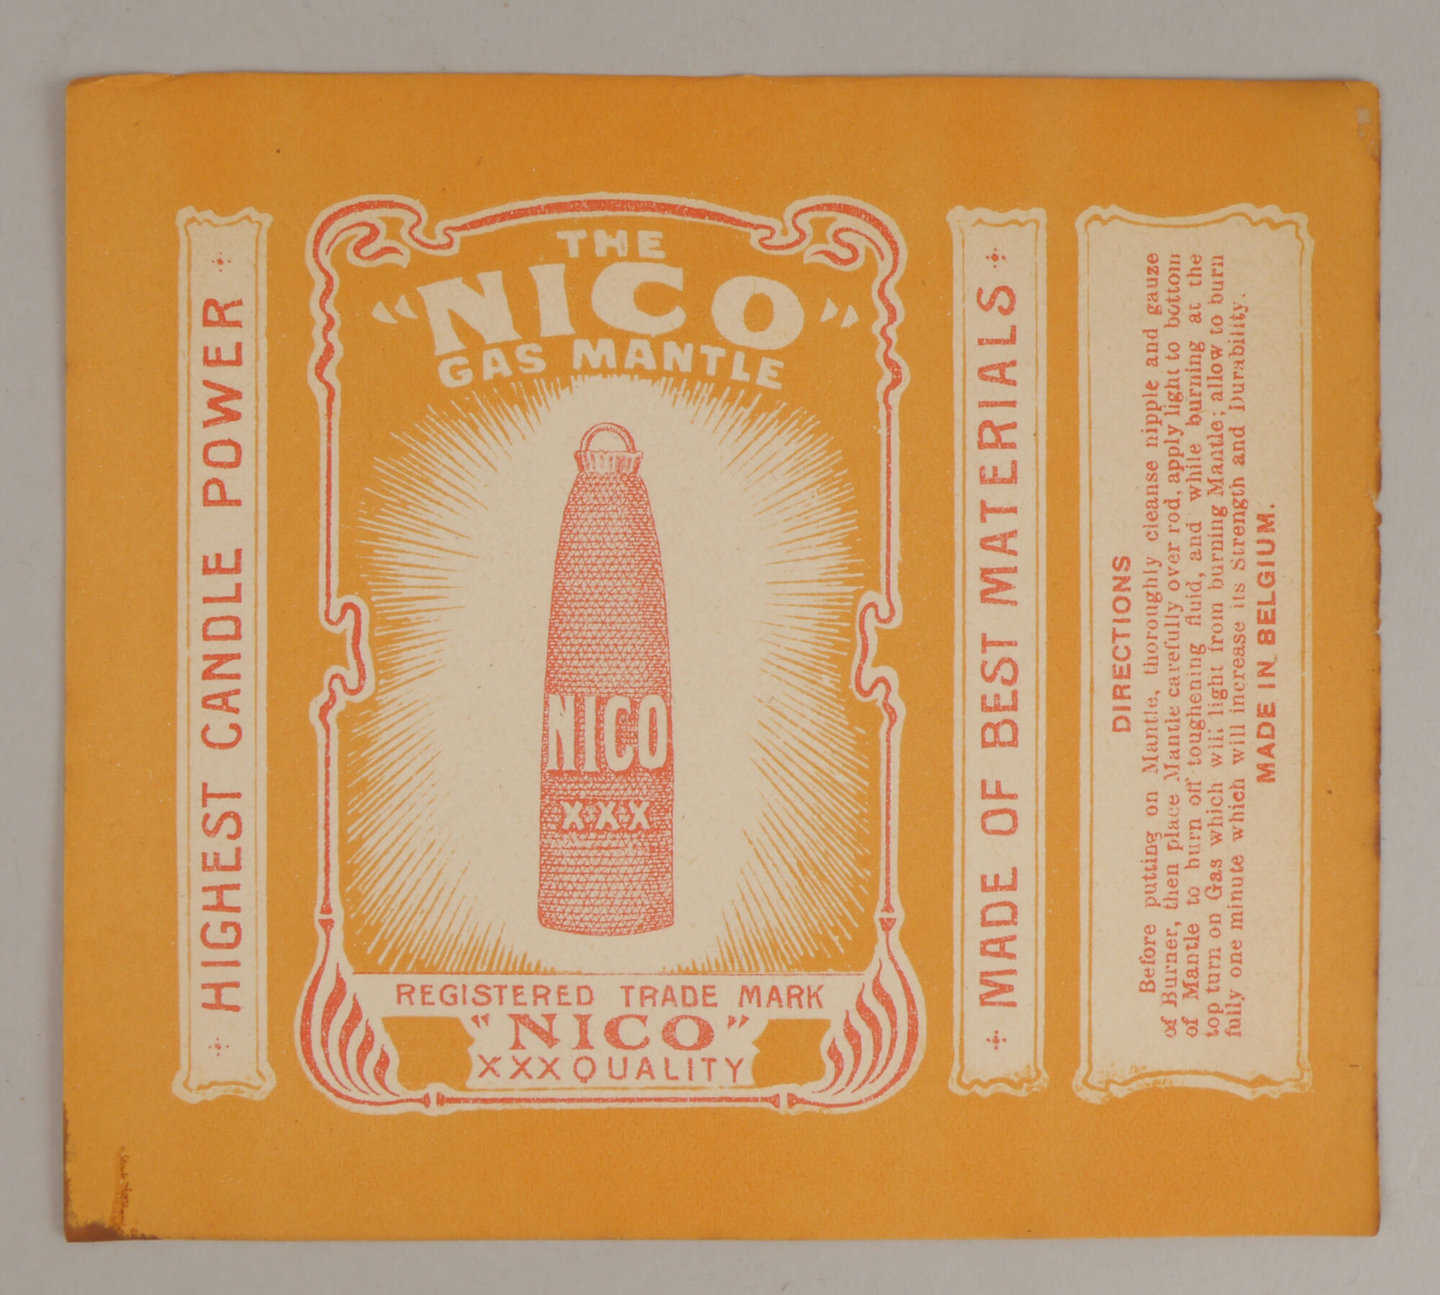 Verpakkingsetiket voor gloeikousje van het merk Nico